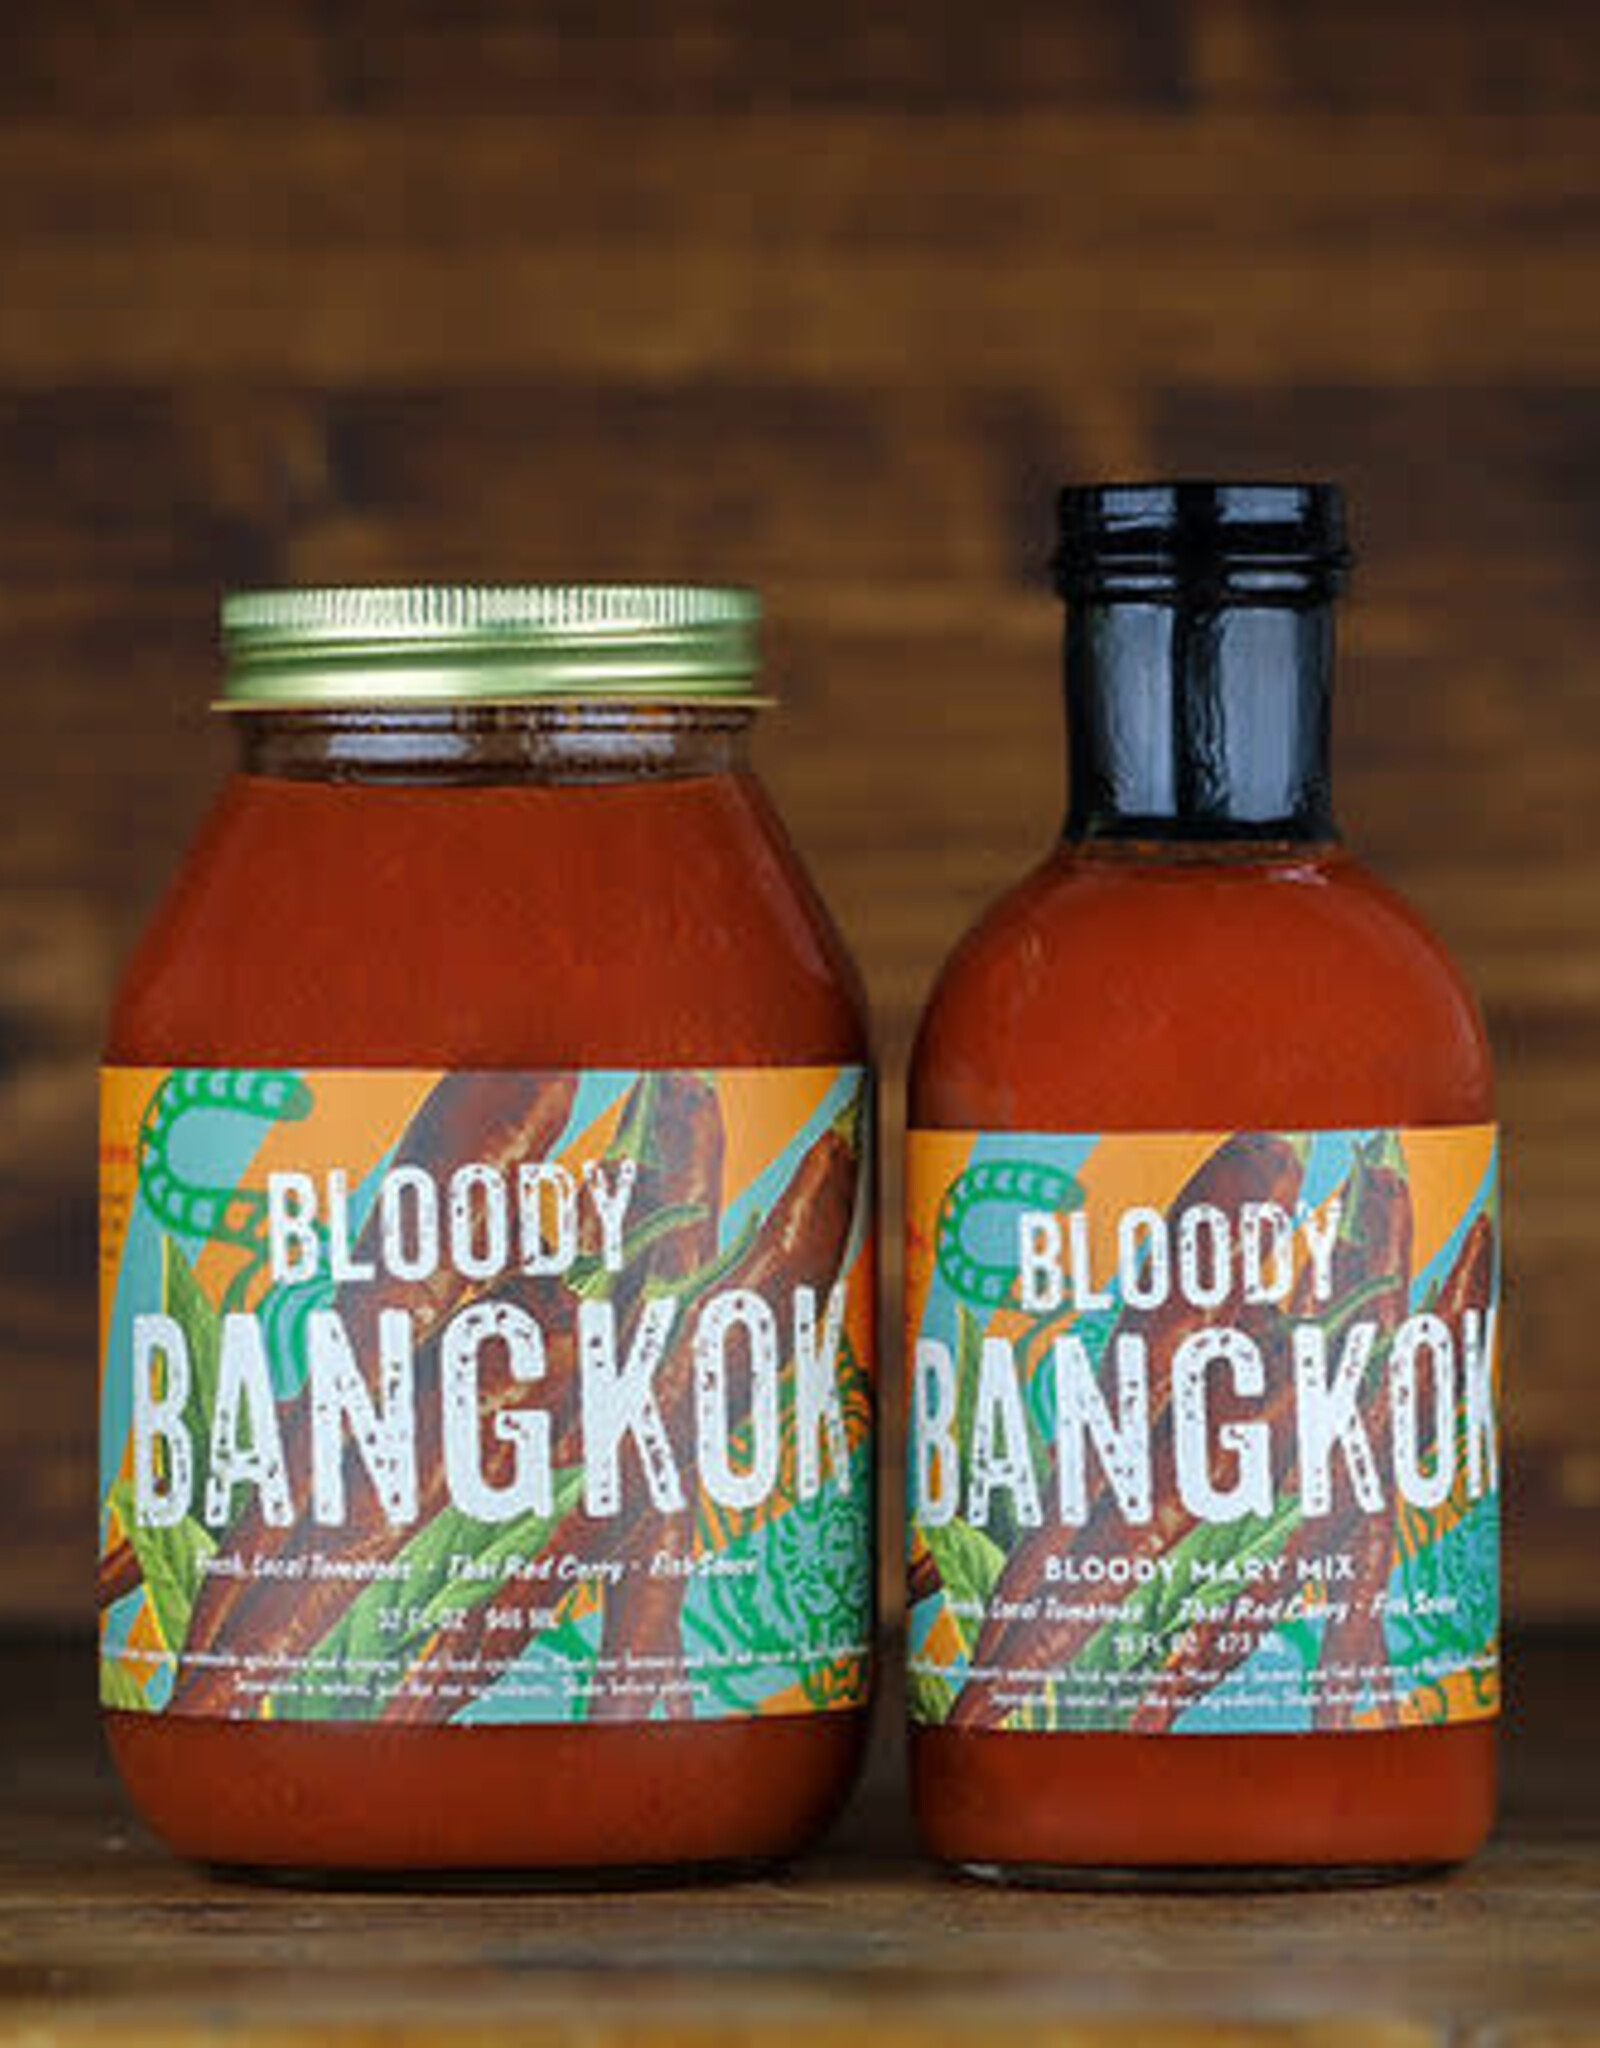 Bloody Bangkok